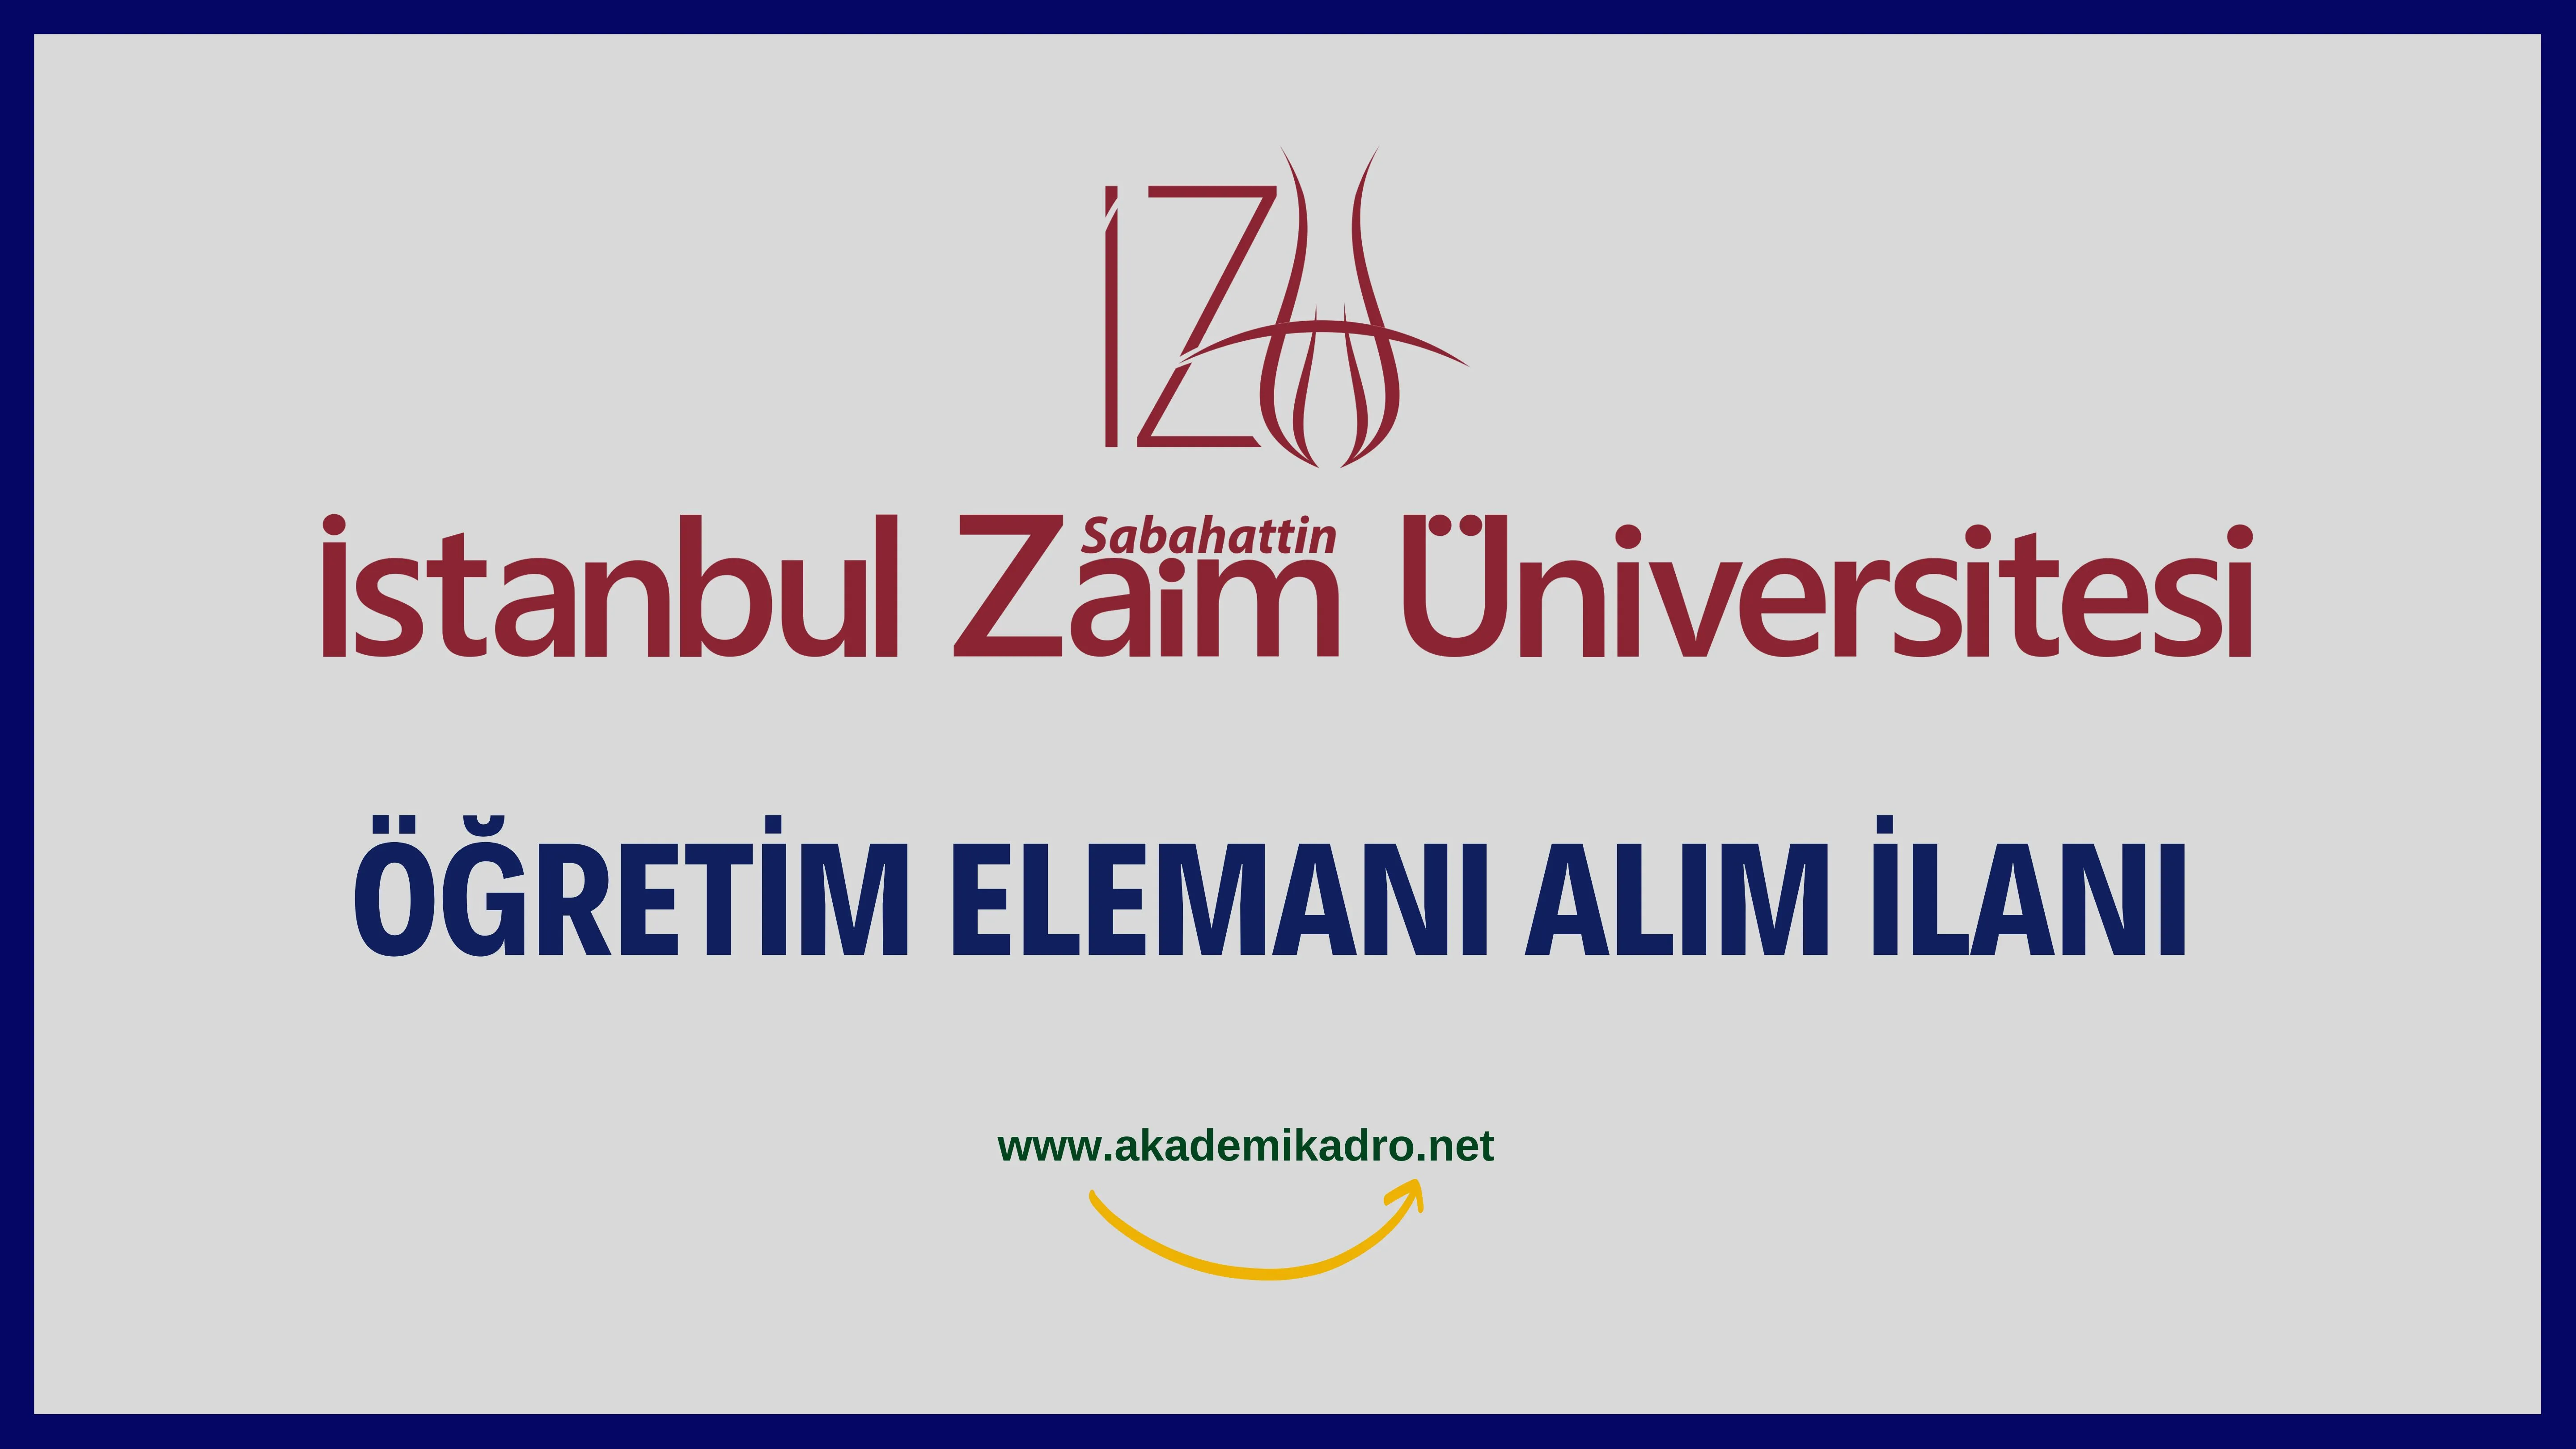 İstanbul Sabahattin Zaim Üniversitesi 4 Öğretim görevlisi, 16 Araştırma görevlisi ve birçok alandan 29 Öğretim üyesi alacak.